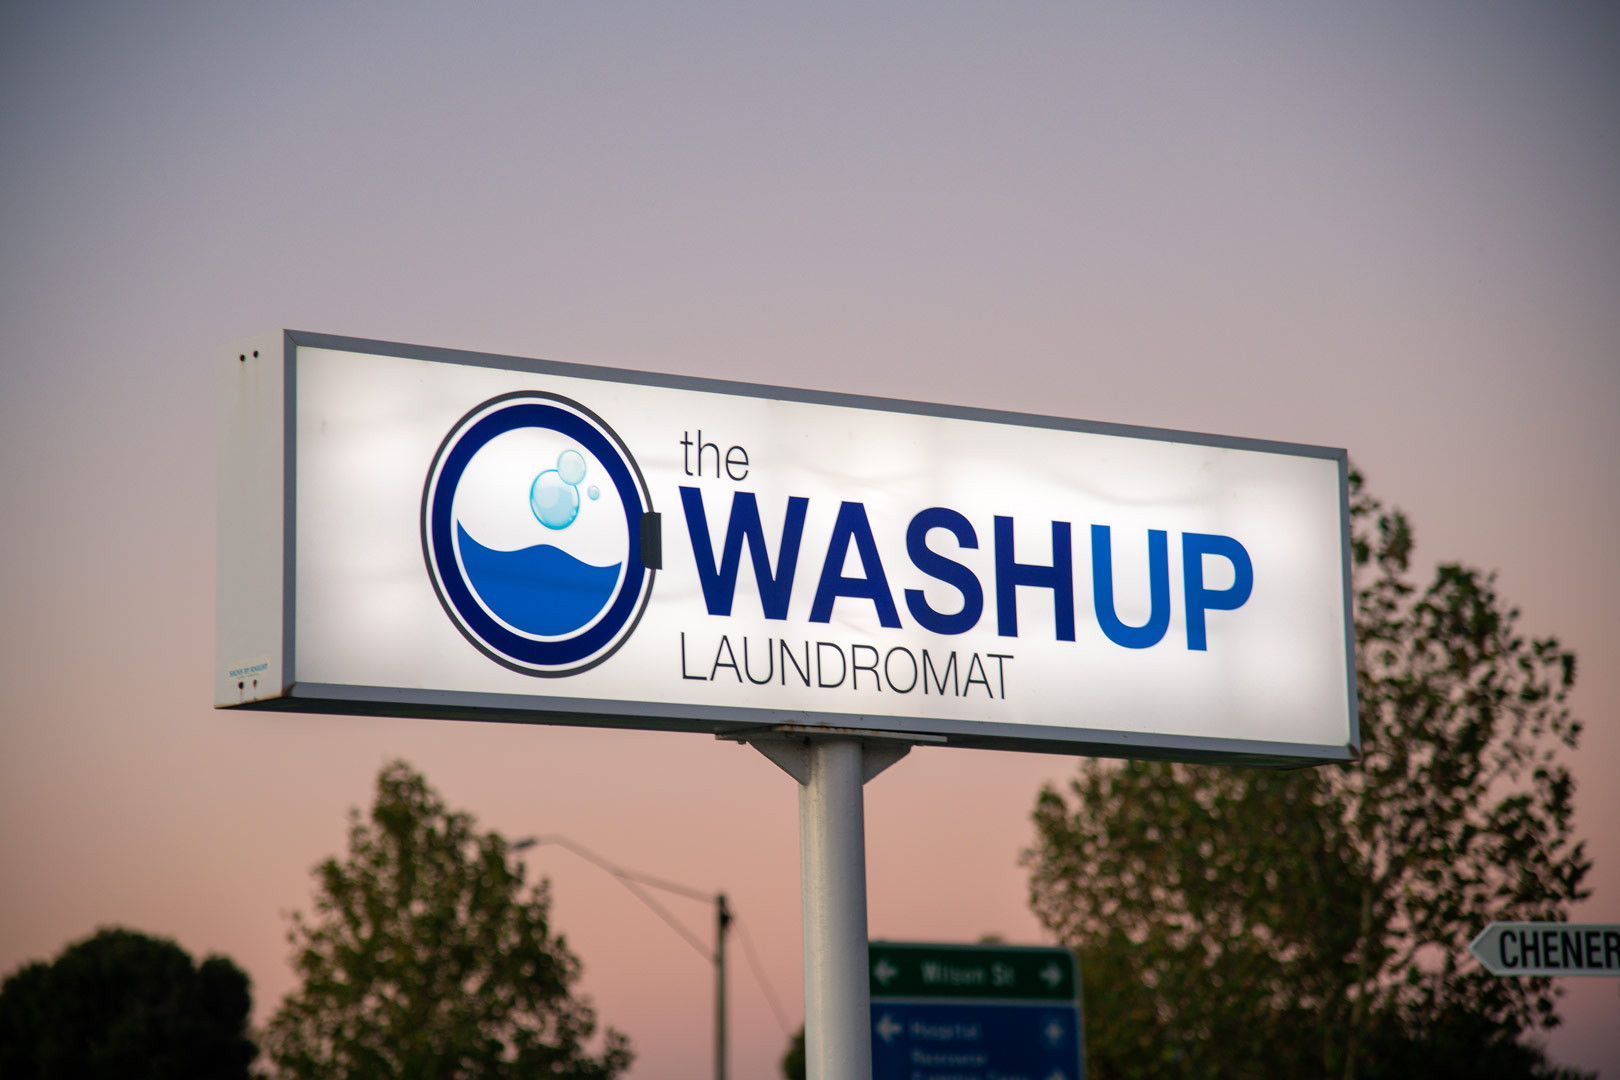  The Washup Laundromat 